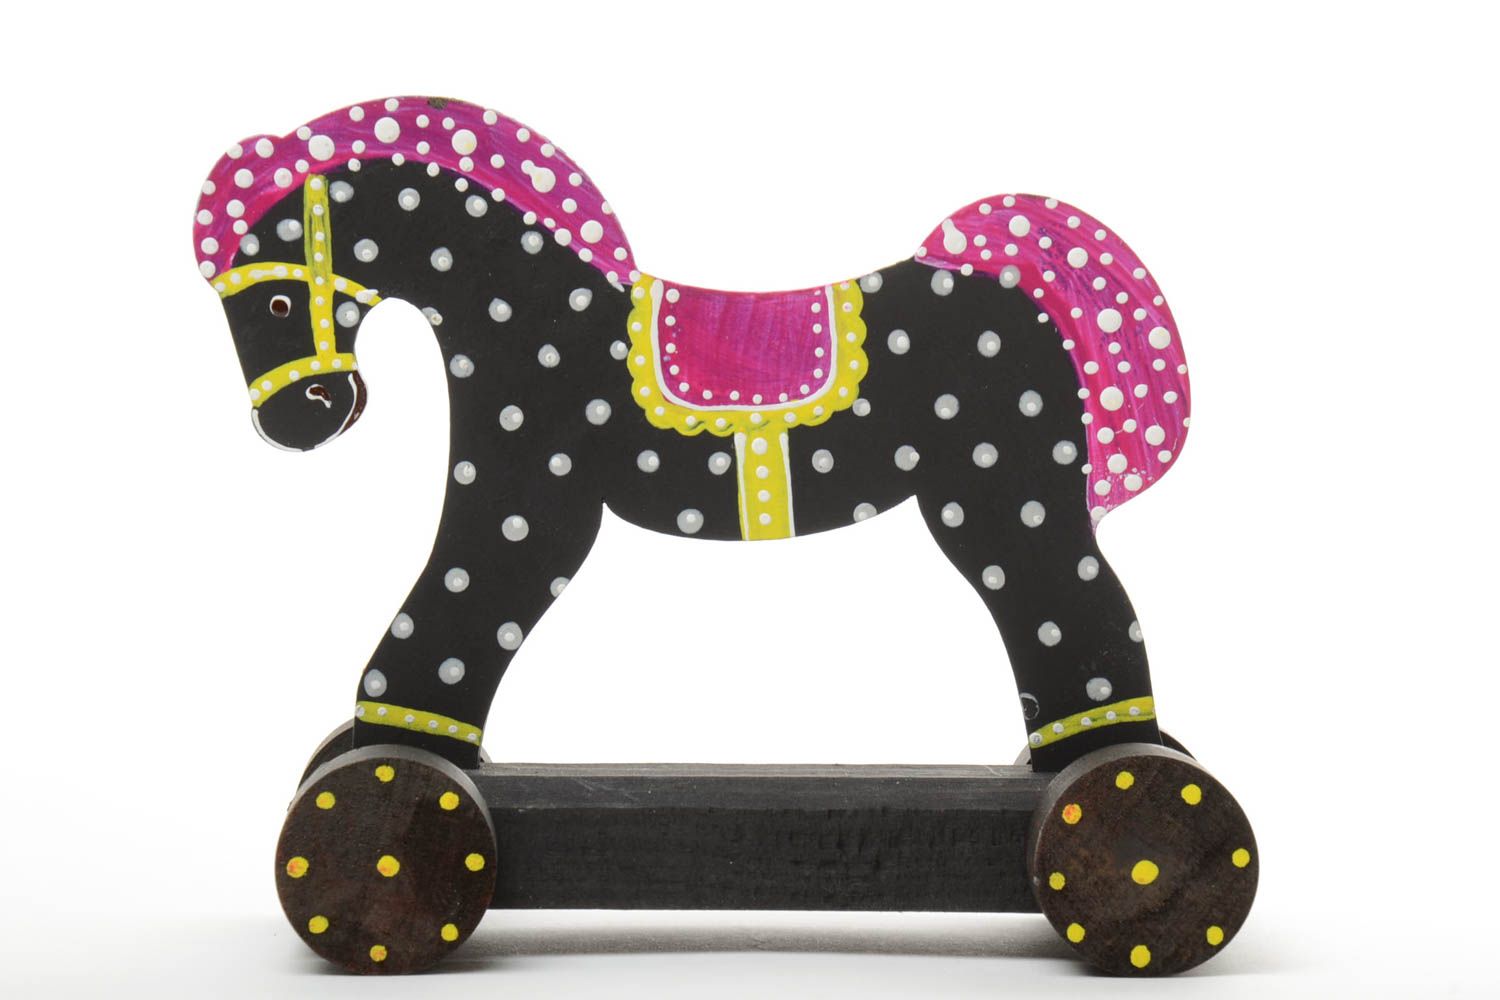 Nachzieher Spielzeug Pferd aus Holz mit Acrylfarben bemalt gepunktet handmade foto 2